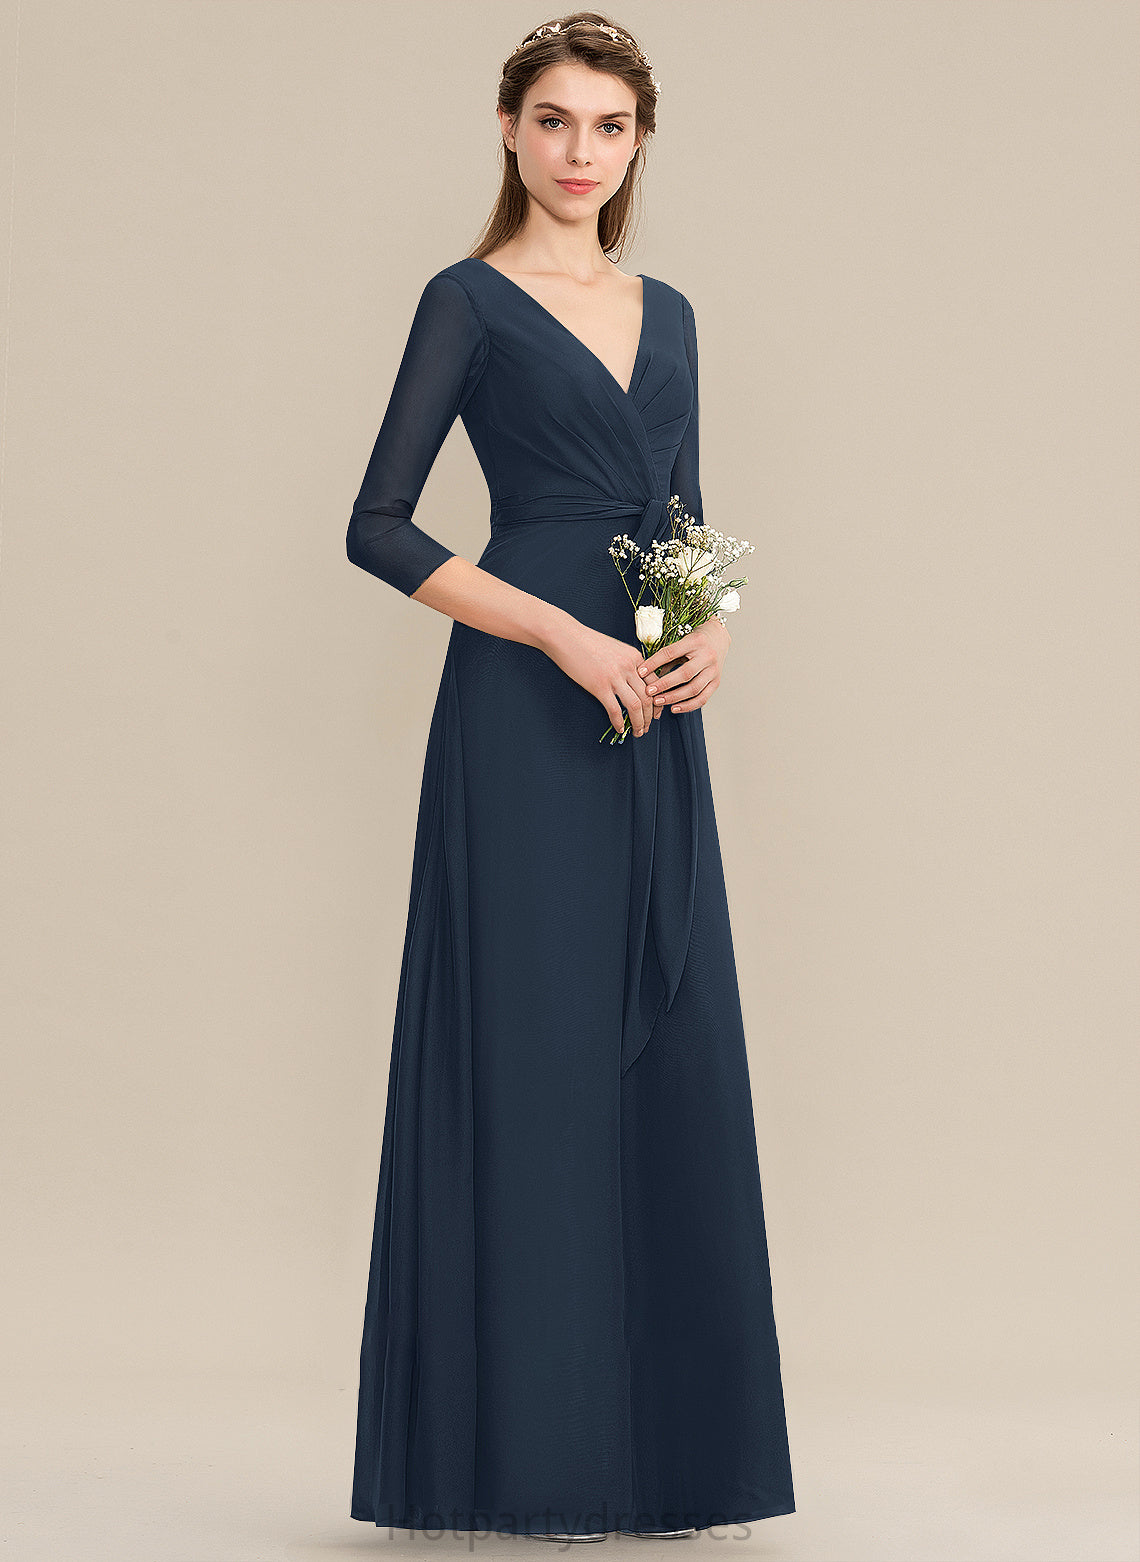 Neckline V-neck A-Line Bow(s) Embellishment Length Floor-Length Ruffle Silhouette Fabric Mariana V-Neck Bridesmaid Dresses